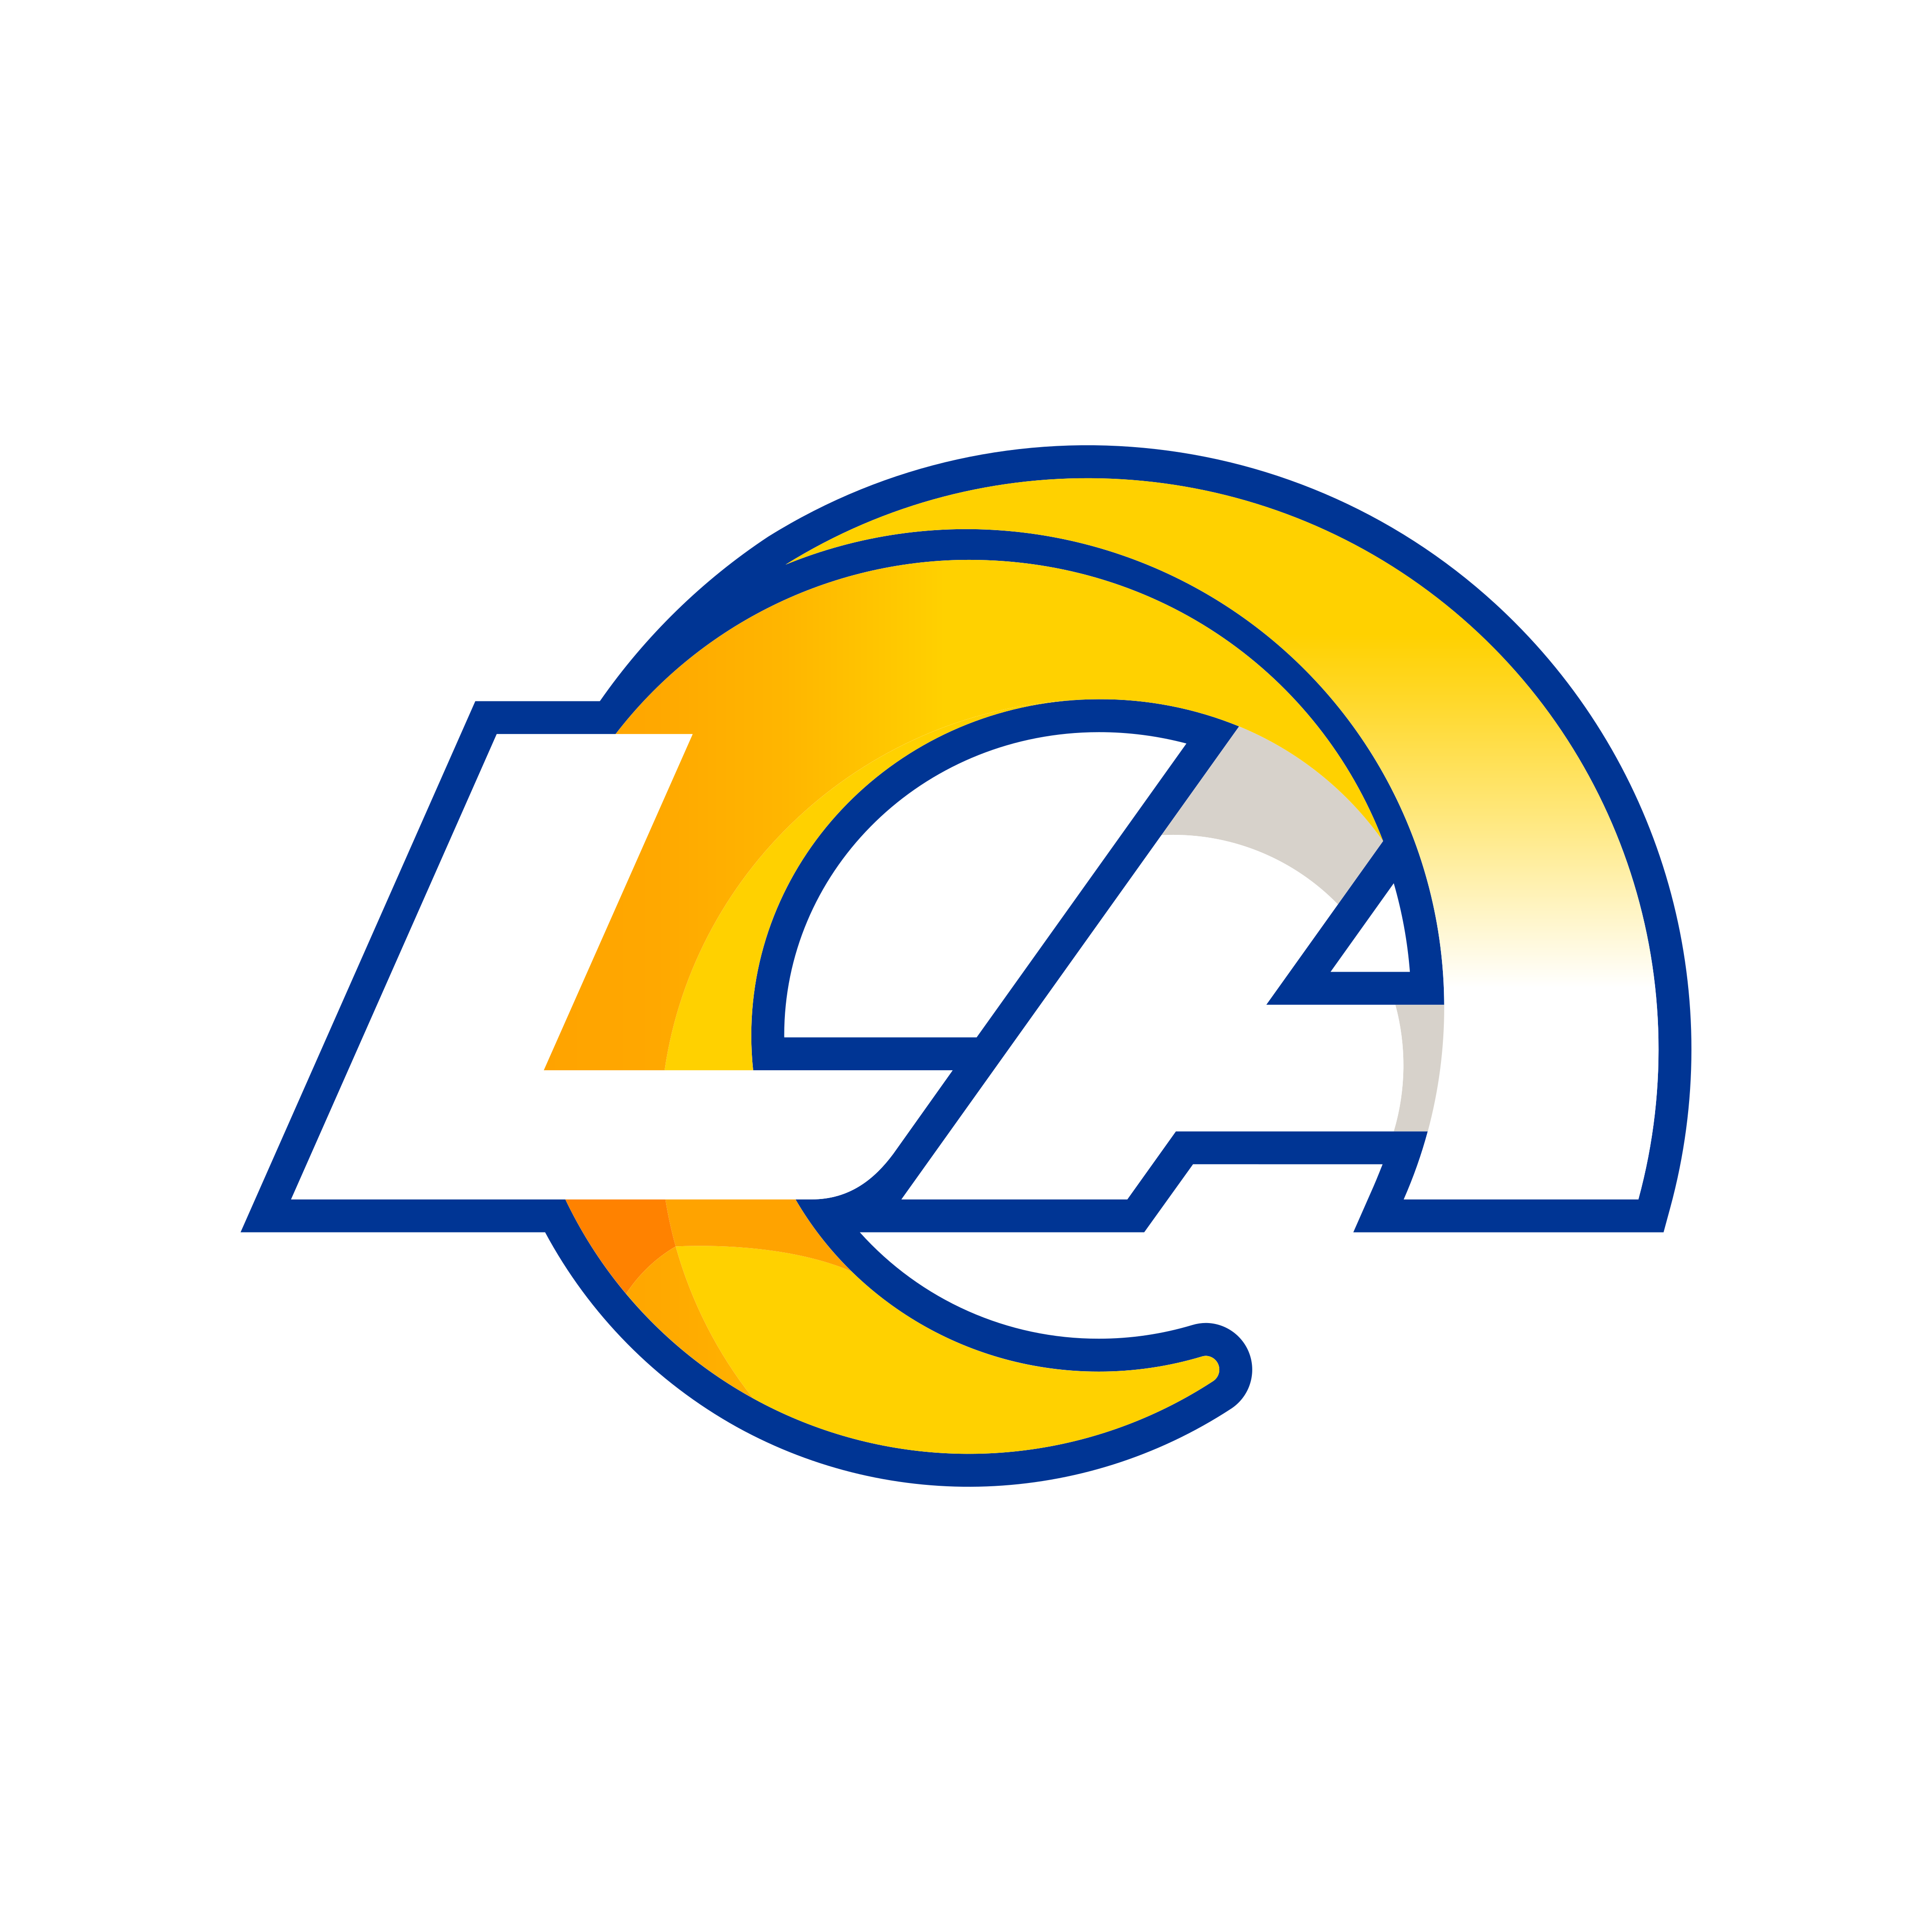 la rams logo 0 - Los Angeles Rams Logo